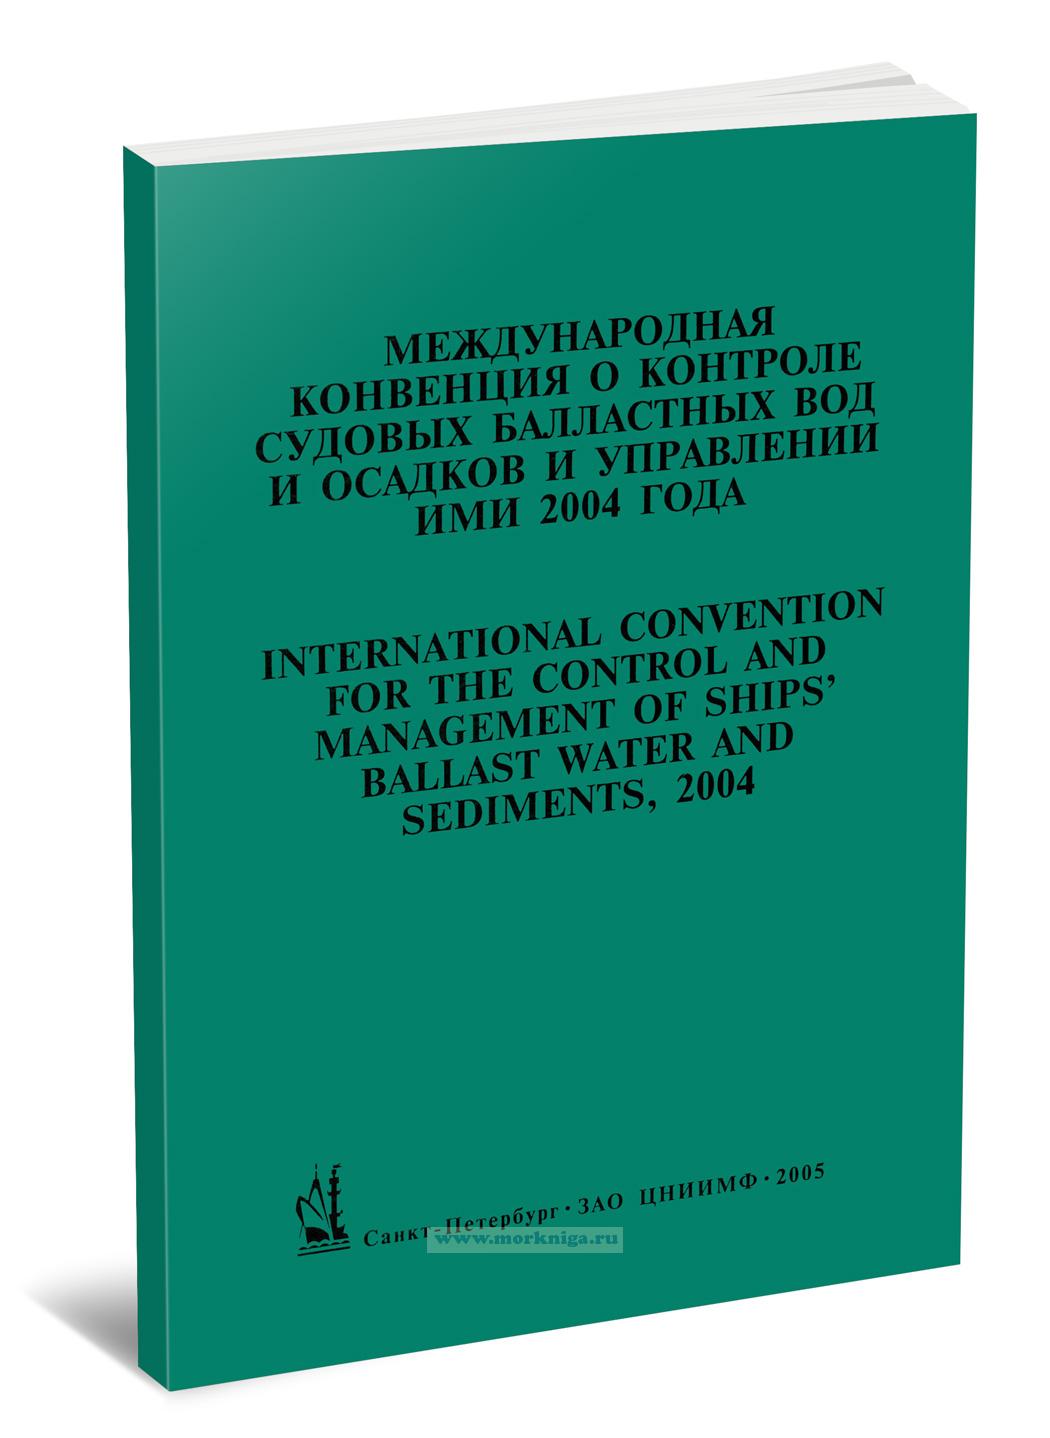 Международная конвенция о контроле судовых балластных вод и осадков и управлении ими 2004 года